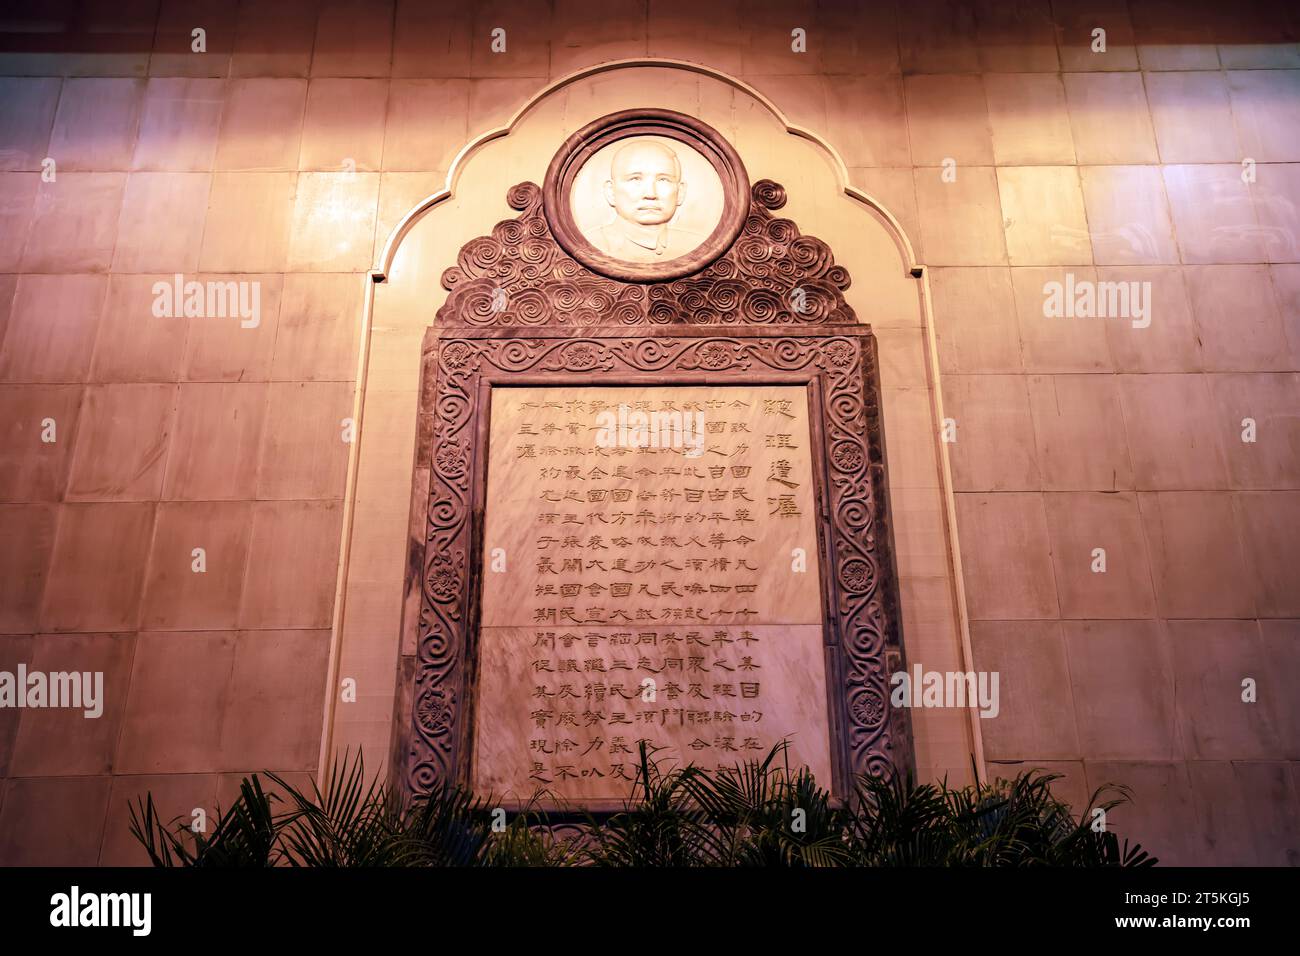 Guangzhou, China - April 5, 2019: Premier's Will Sculpture of Zhongshan Memorial Hall in Guangzhou, Guangdong Province, China Stock Photo